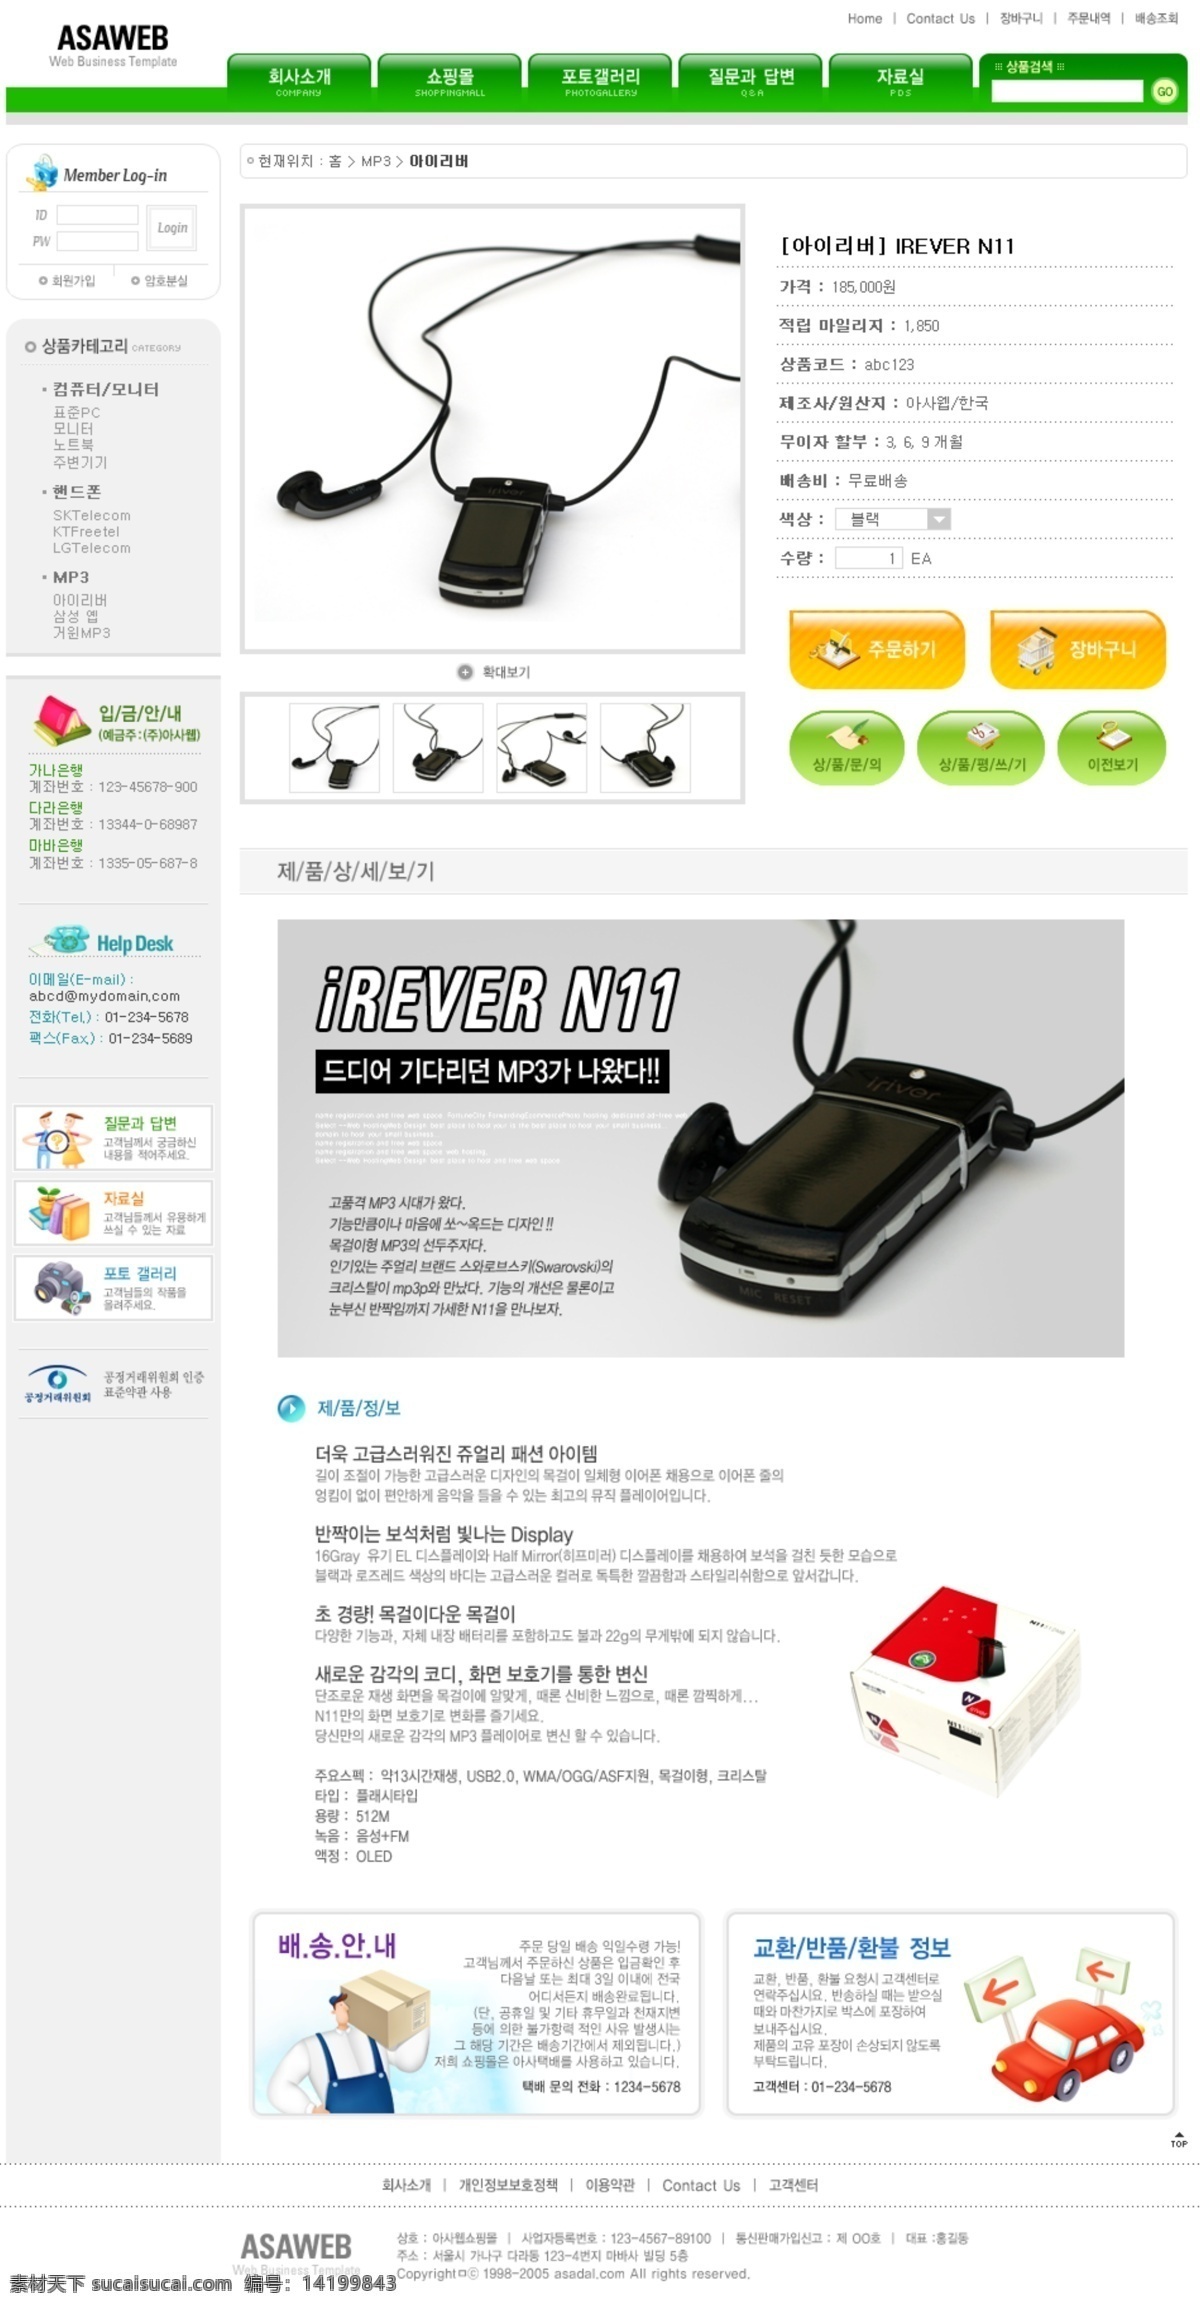 韩国 数码 网站 网页模板 胪就衬 网页素材